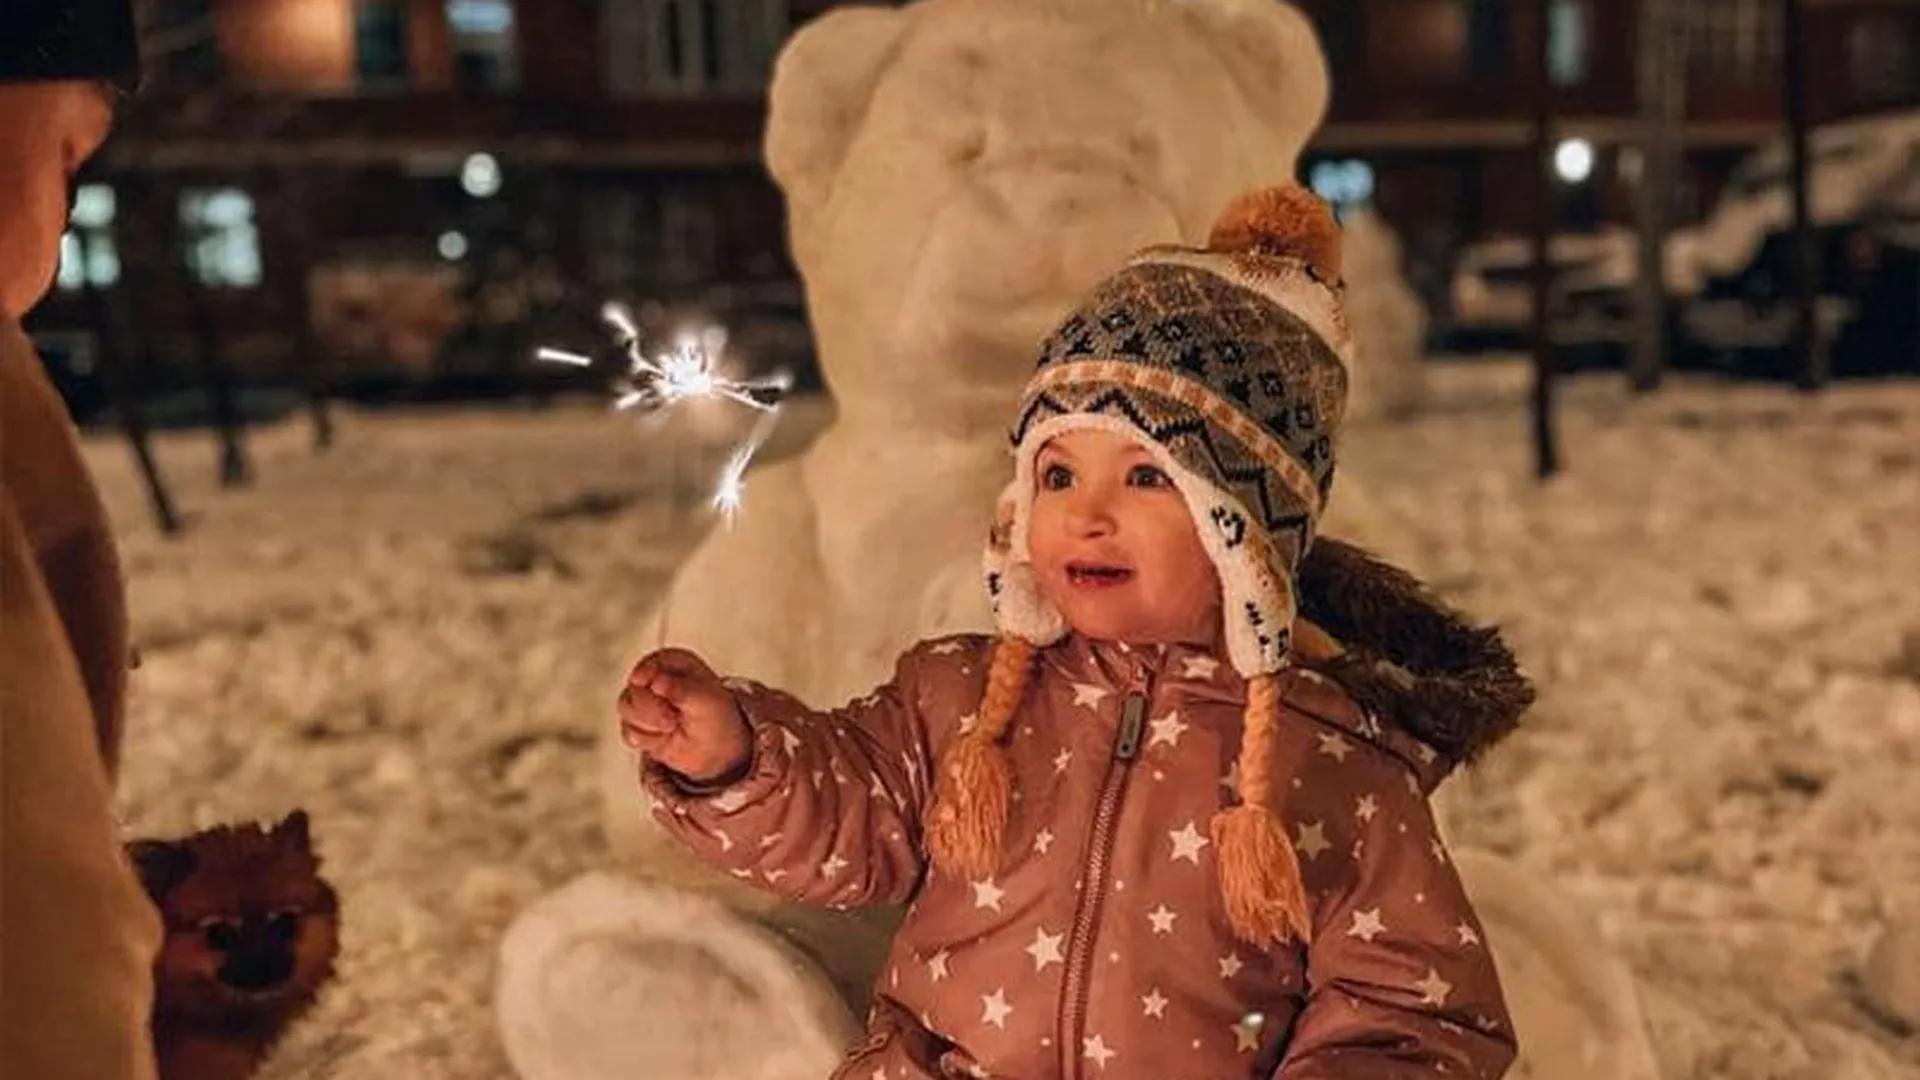 Домохозяйка из Балашихи создает для дочки идеальные снежные скульптуры, не имея художественного образования